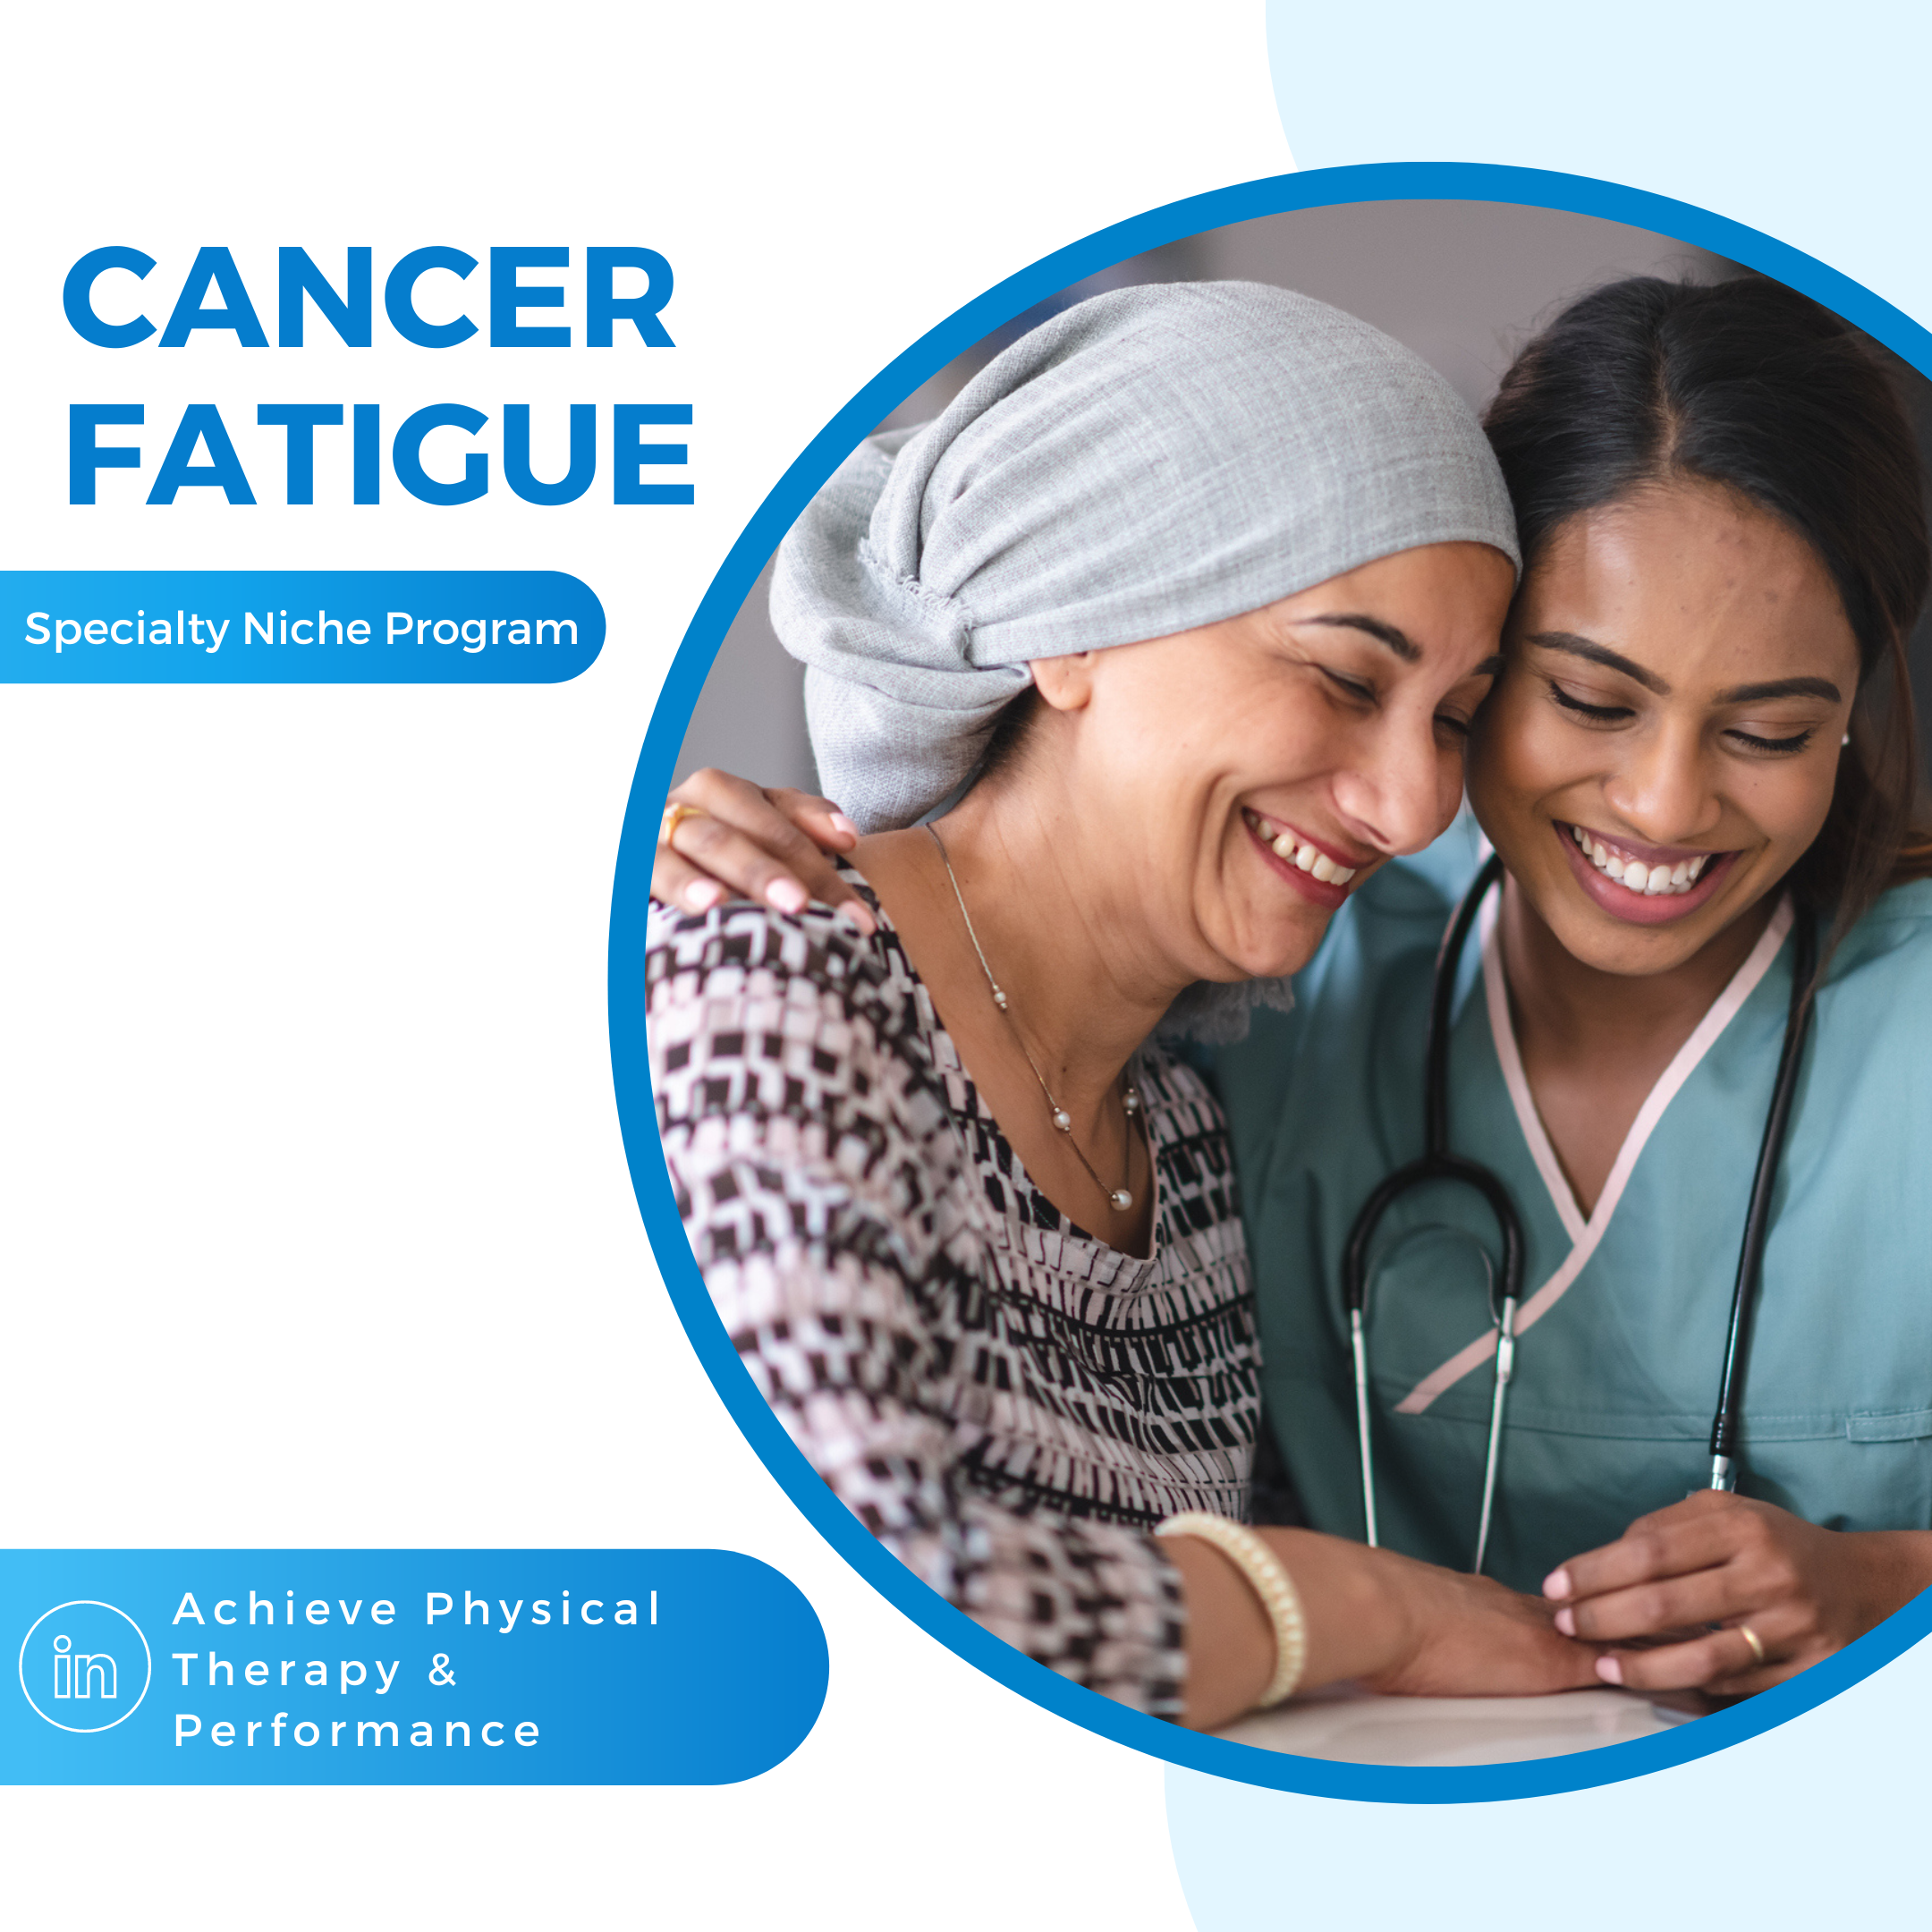 Cancer fatigue, managing cancer fatigue, cancer related fatigue, cancer fatigue symptoms